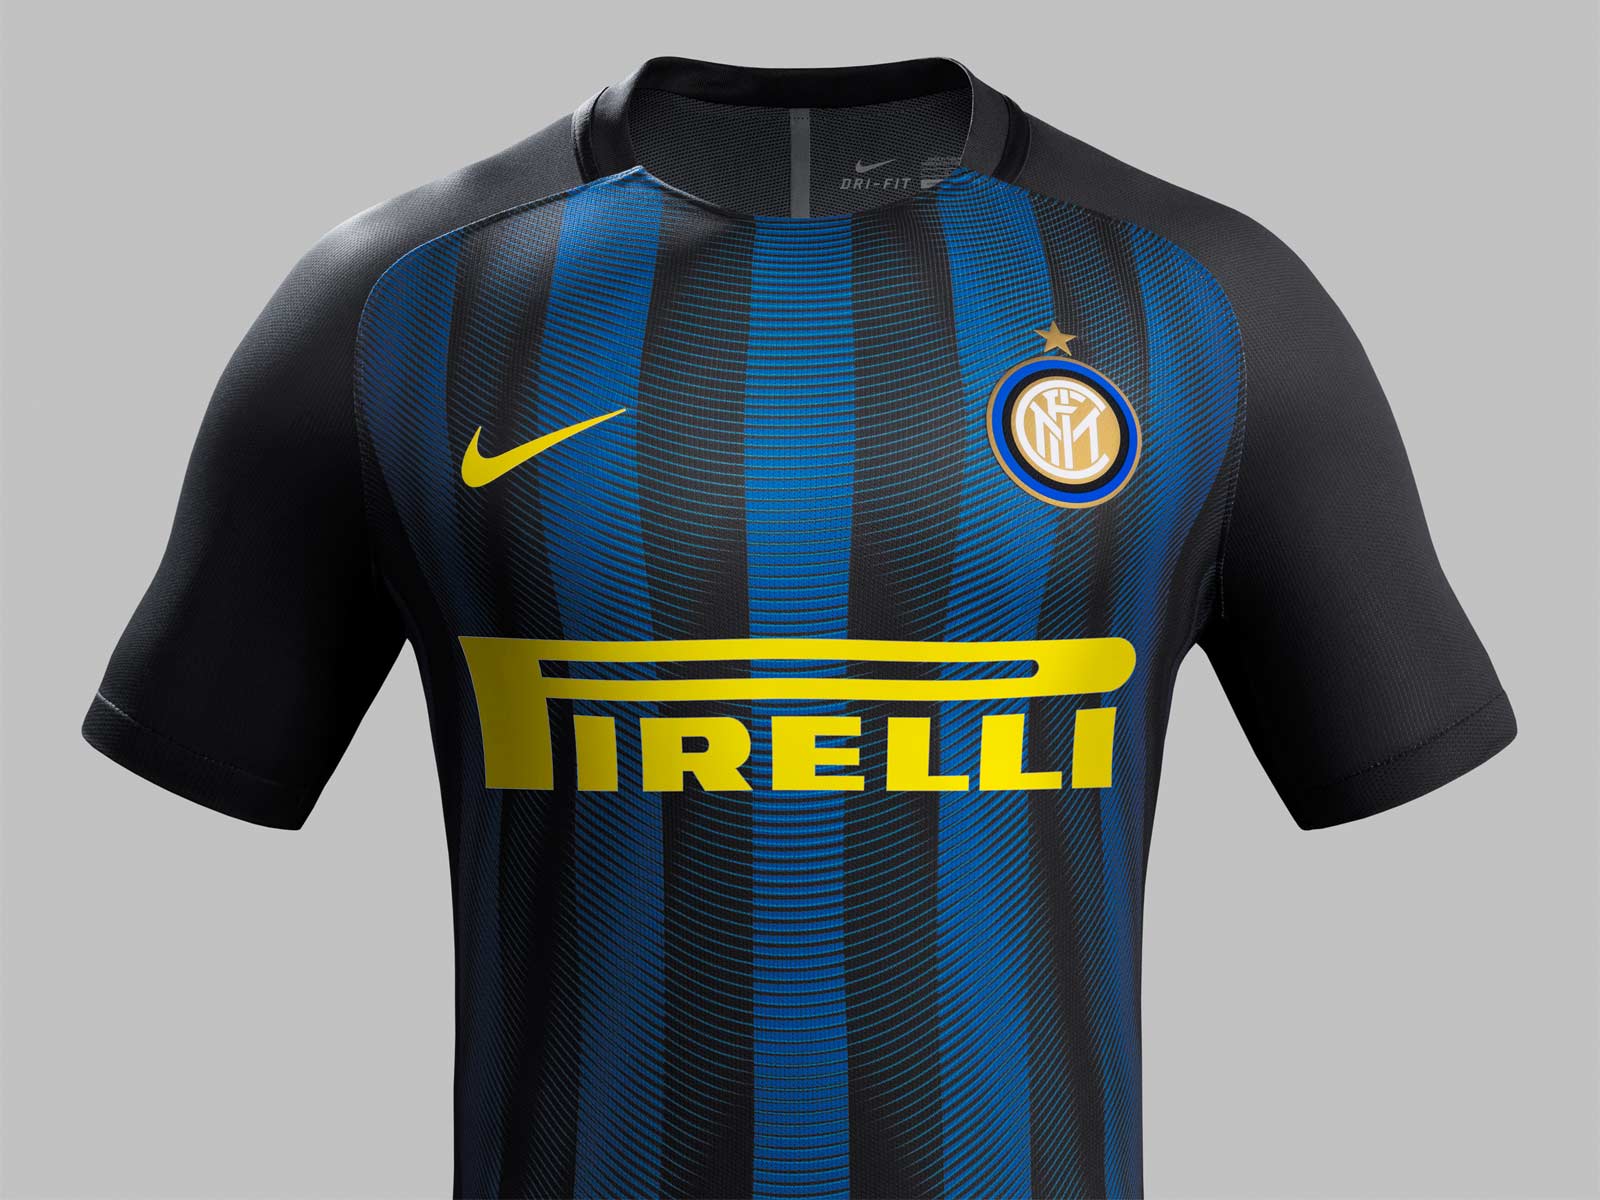 Inter Milan 16-17 Home Kit Released - Footy Headlines